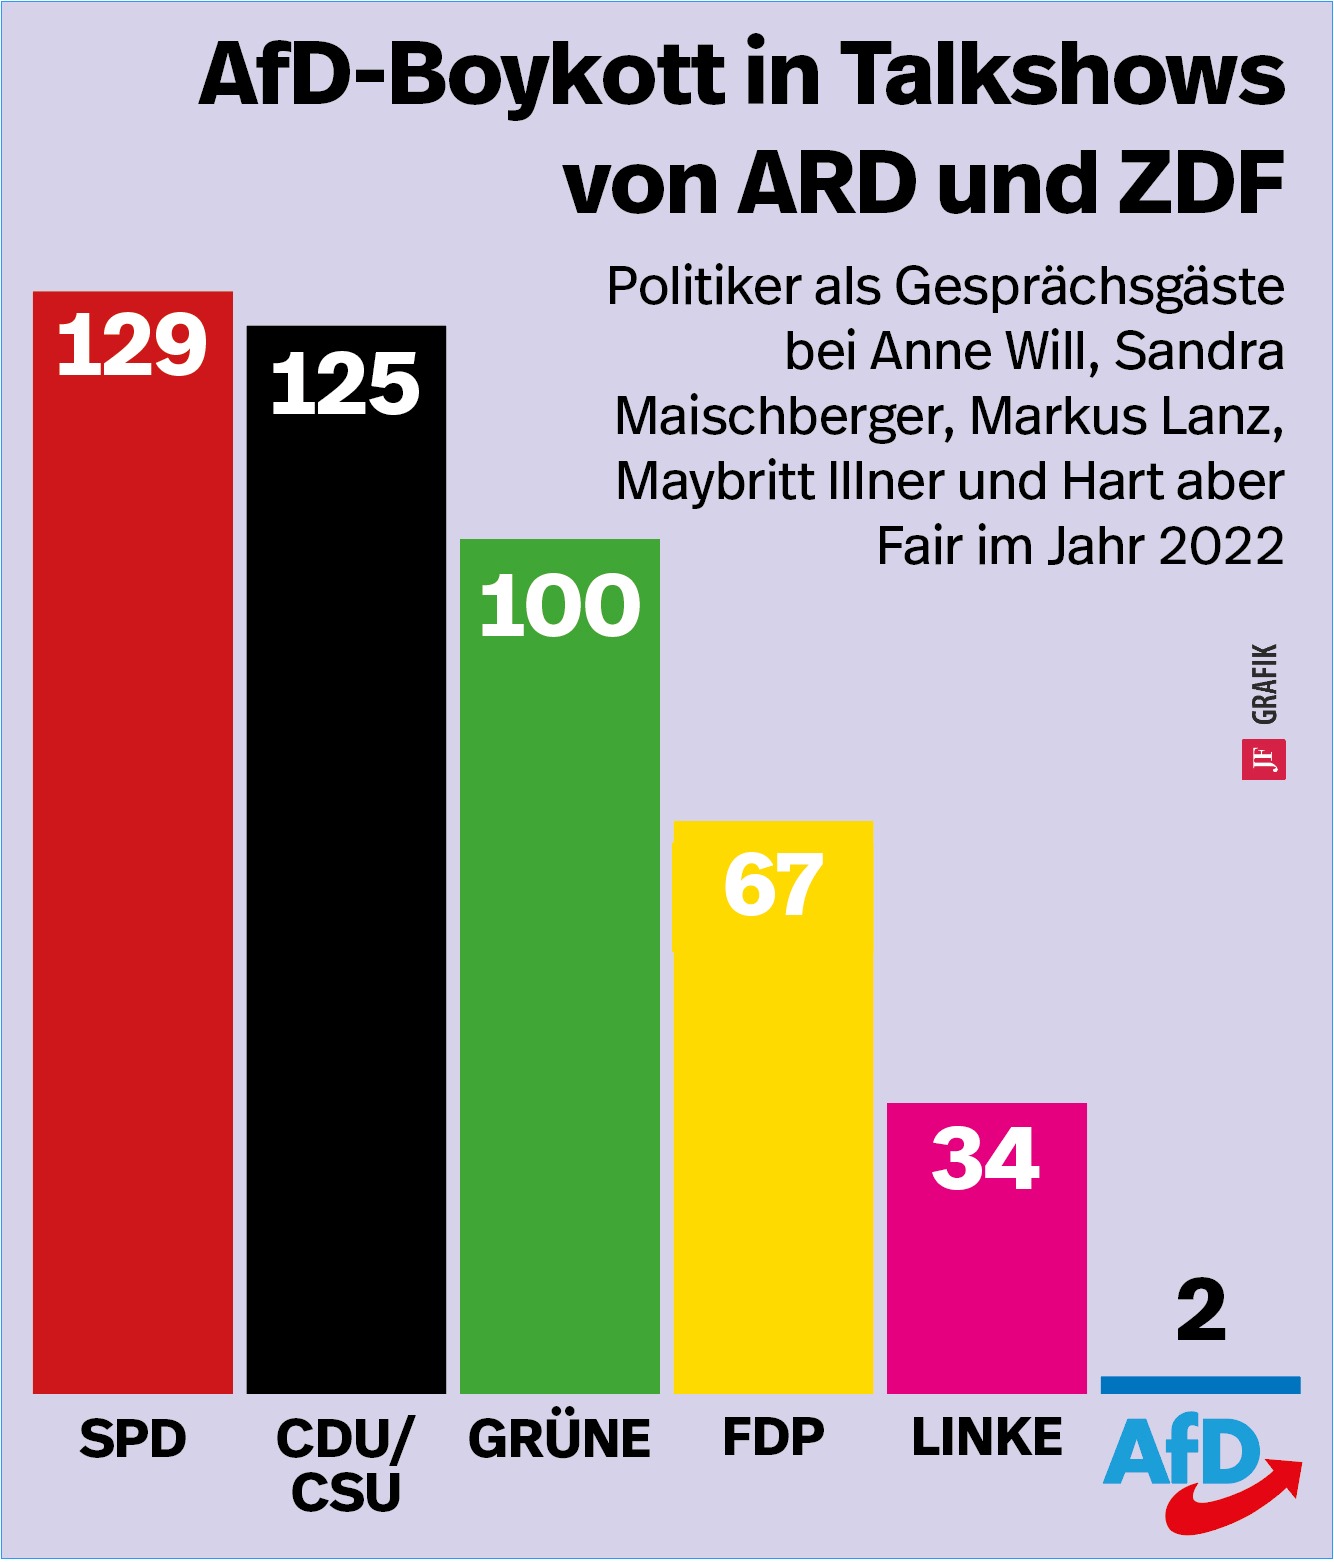 Grafik und Balkendiagramm, das die Anzahl der Talshow-Auftritte von AfD-Politikern und Politikern aller anderen Parteien im Bundestag in den Talkshows von ARD und ZDF abbildet.